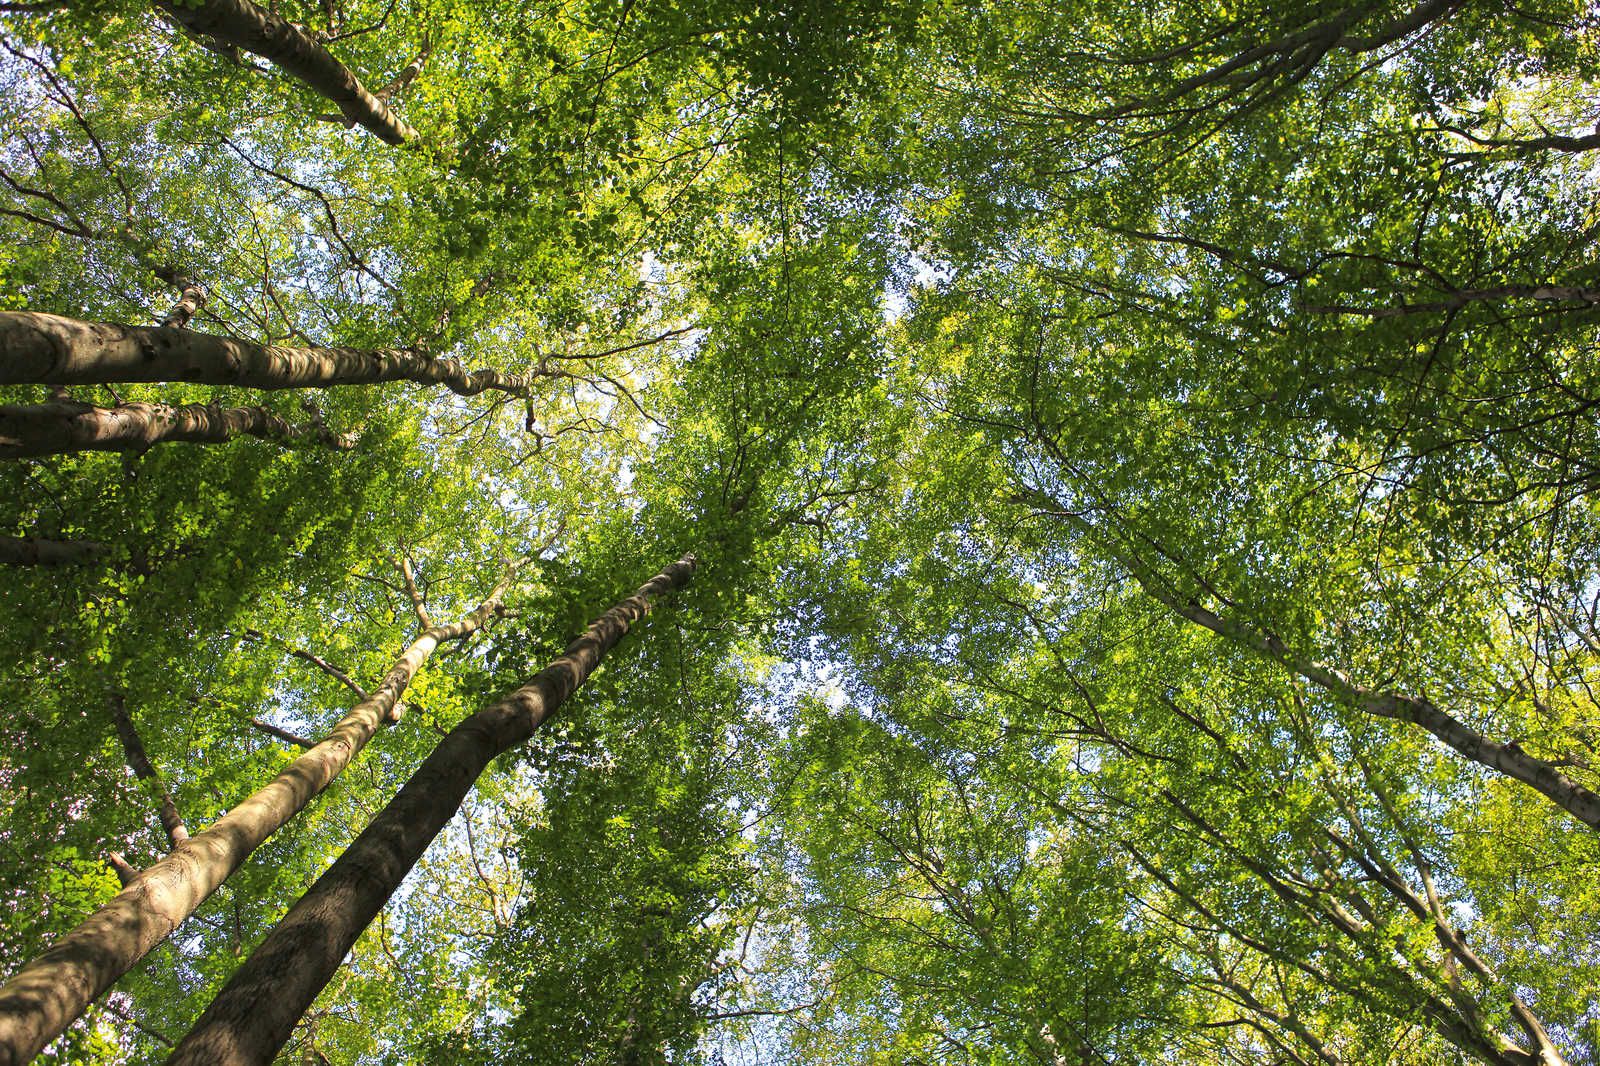             Blätterdach Leinwandbild mit Laubwald Baumwipfeln – 0,90 m x 0,60 m
        